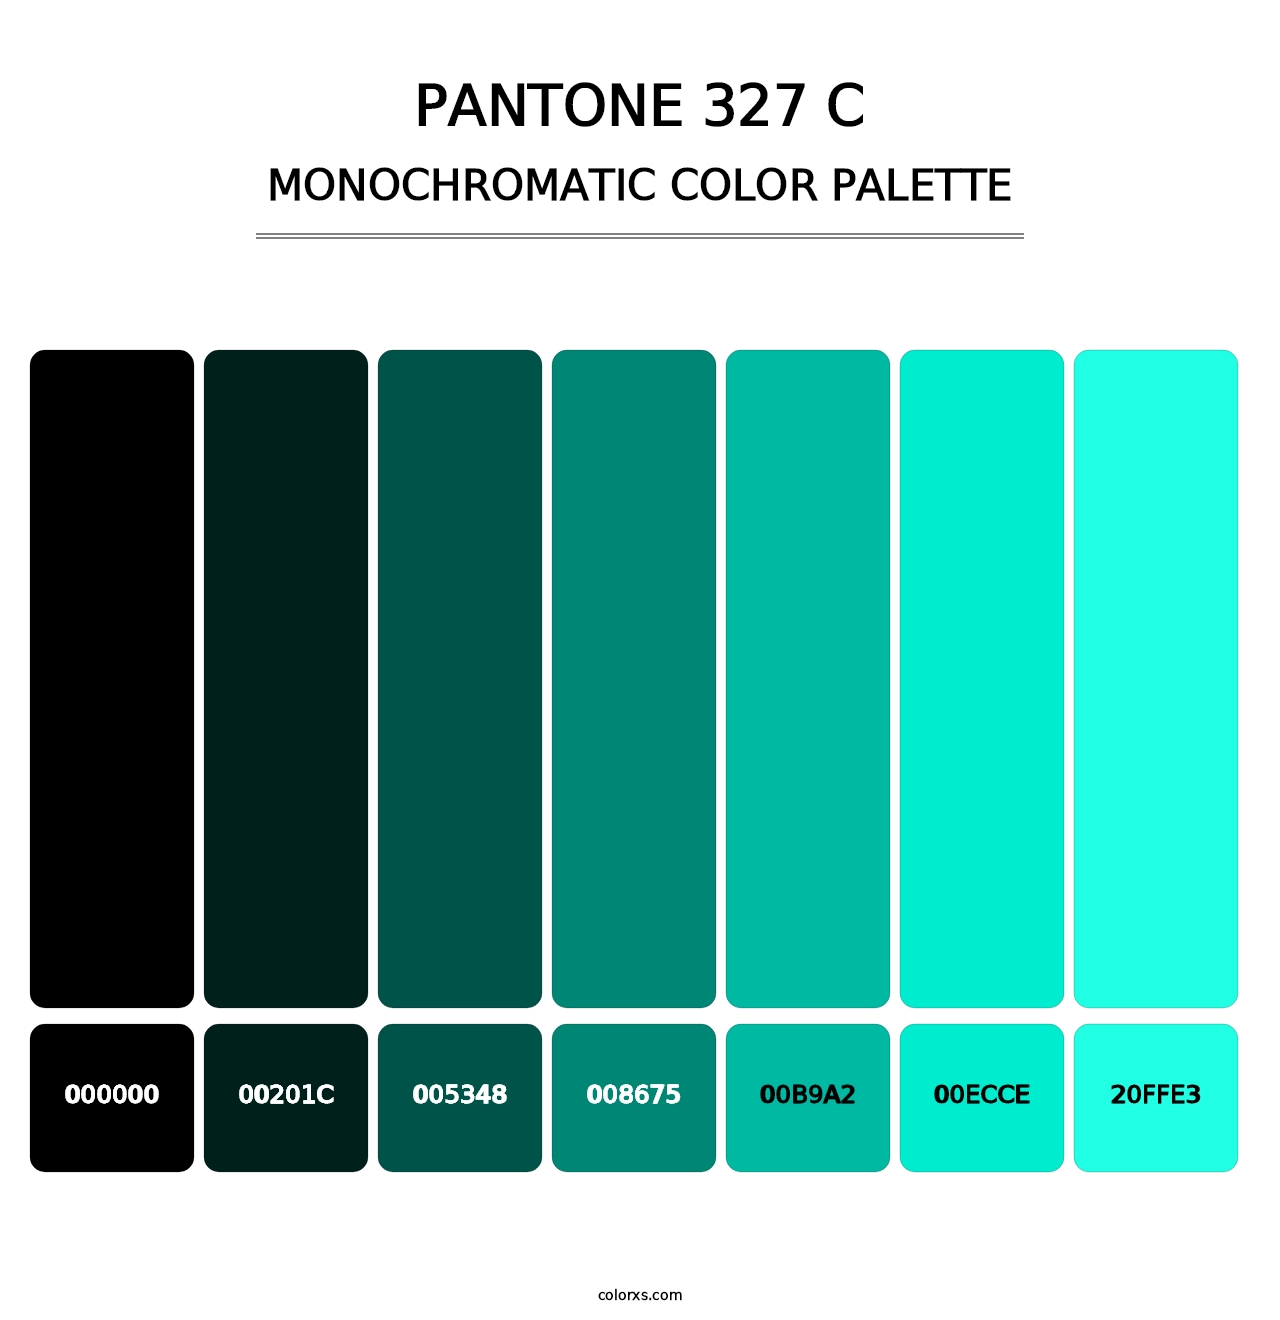 PANTONE 327 C - Monochromatic Color Palette